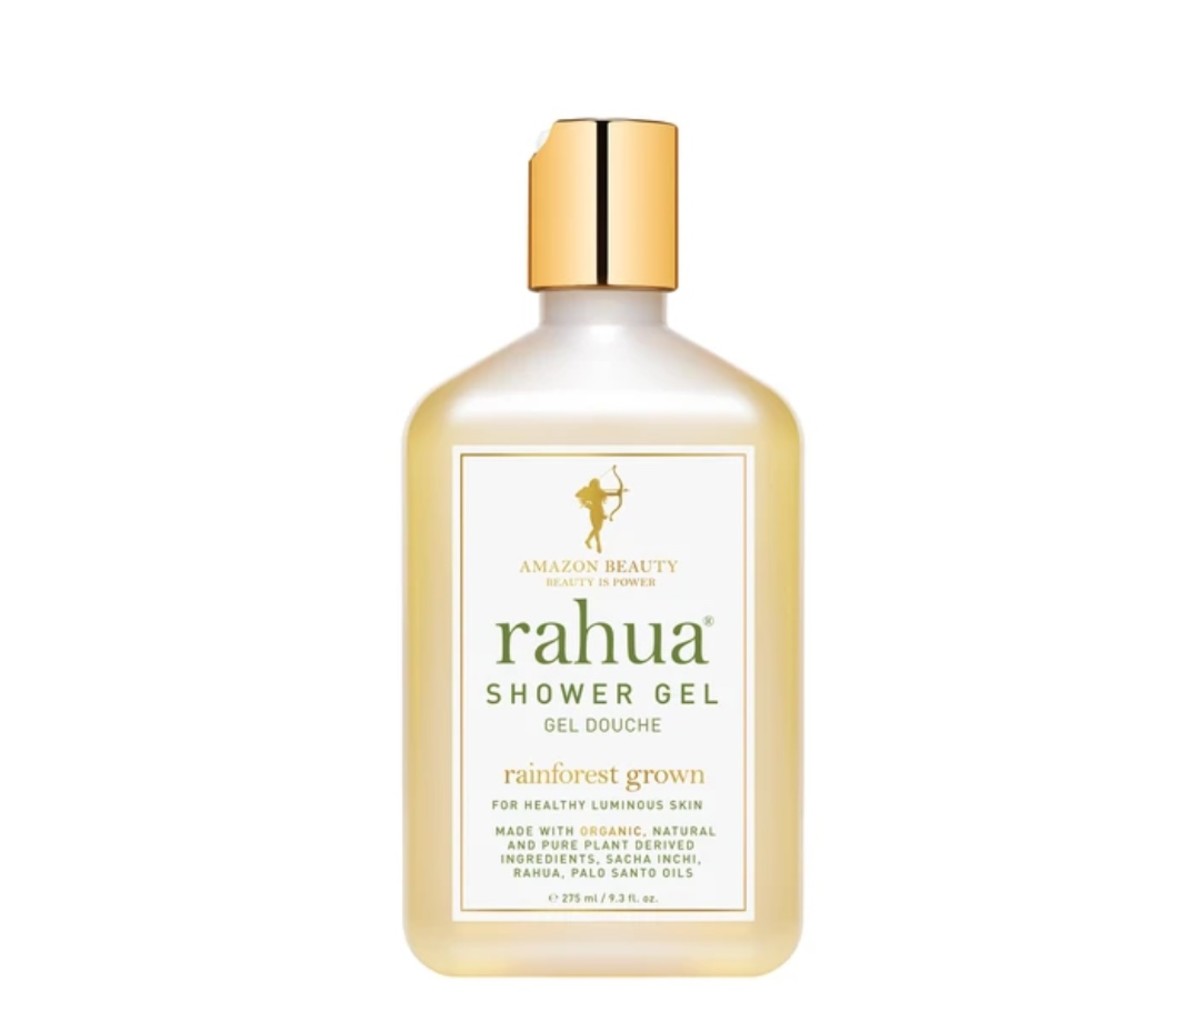 Rahua's organic shower gel